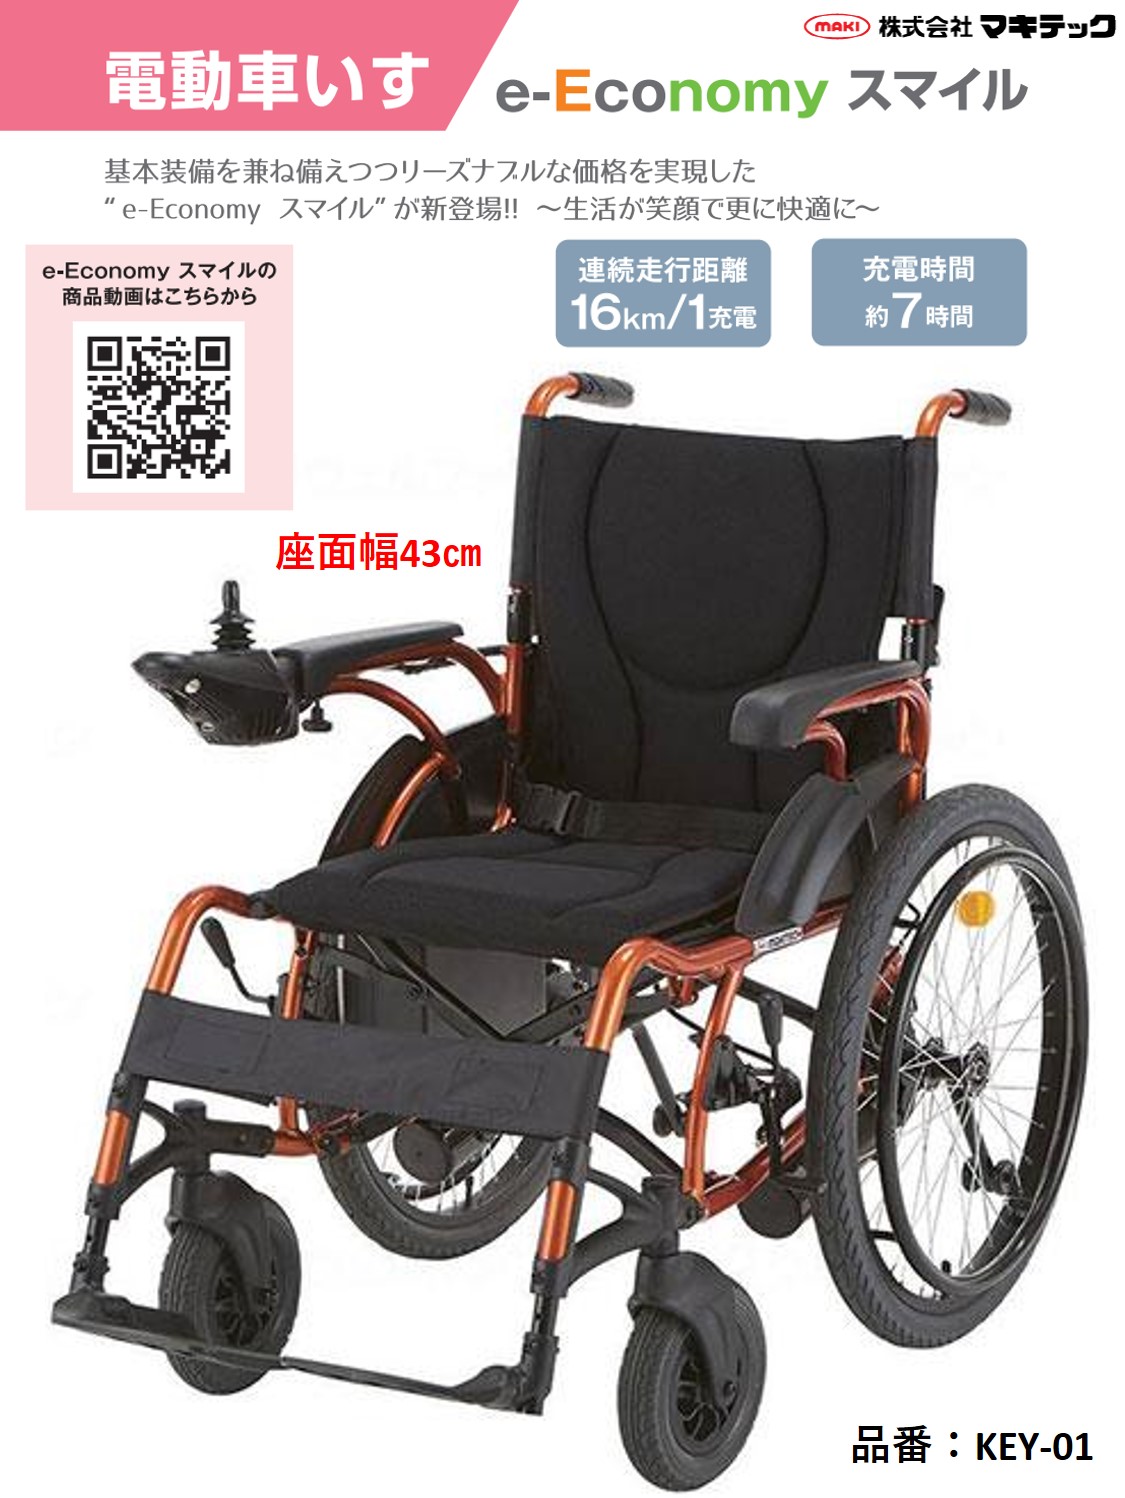 【新品】電動車椅子 e-Economy スマイル KEY-01